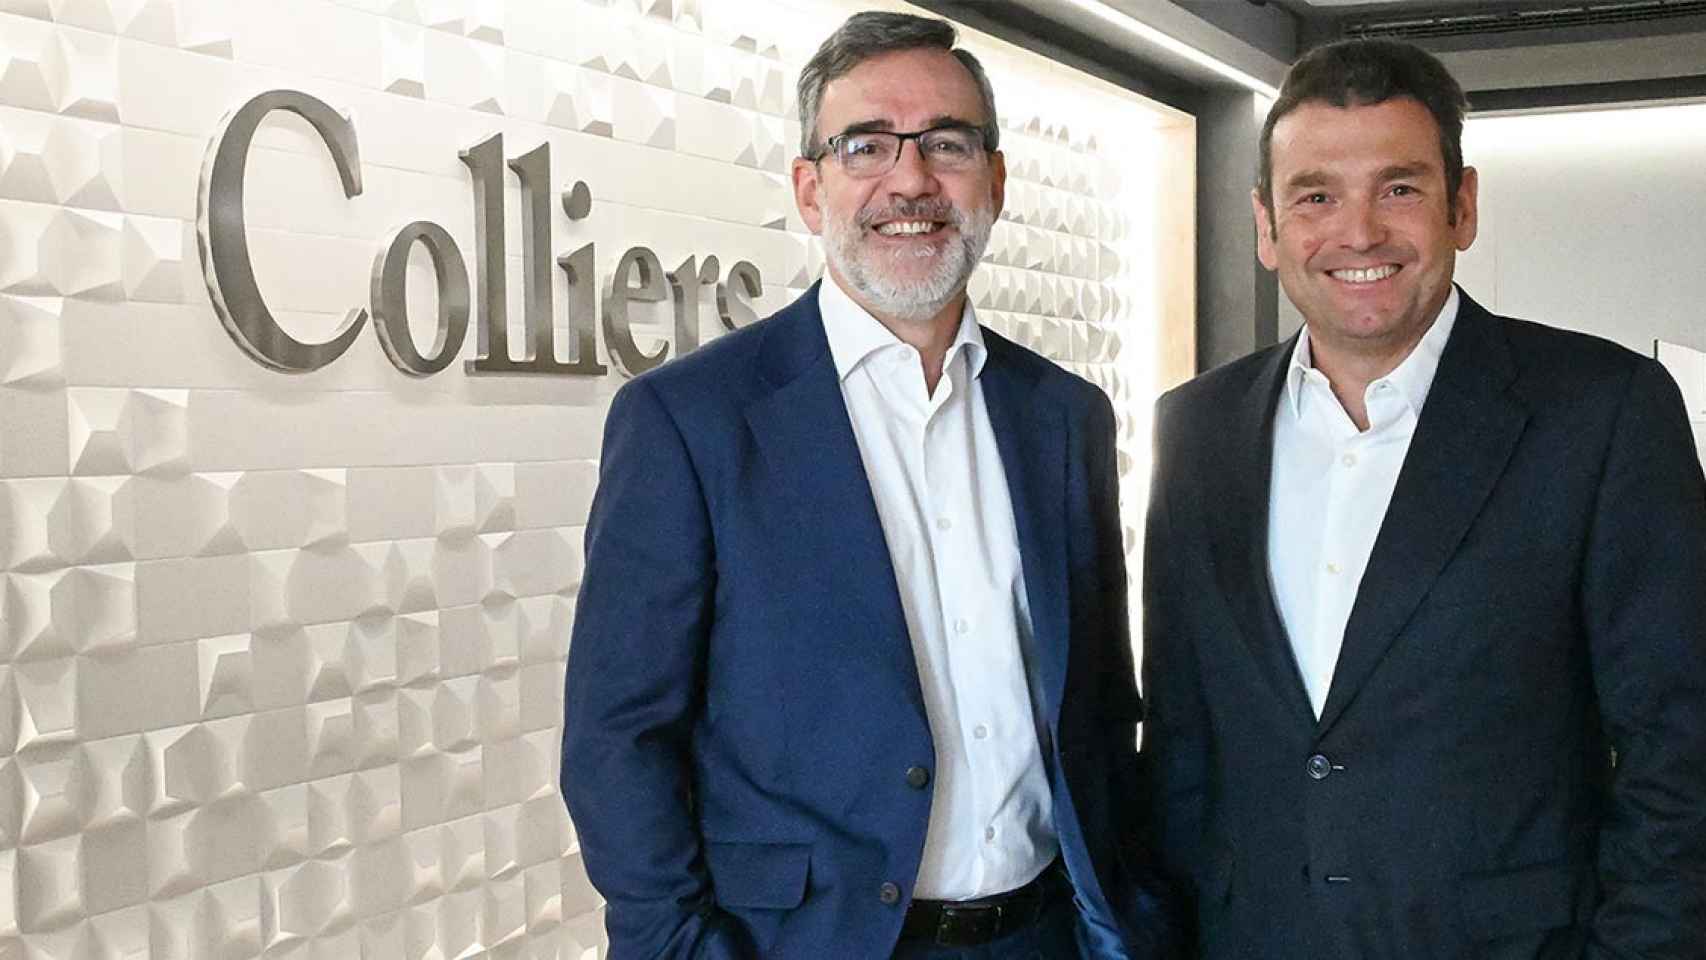 Mike Echavarren, Presidente y CEO de Colliers Iberia y Joan García, Director General y Partner y de Colliers Spain / COLLIERS